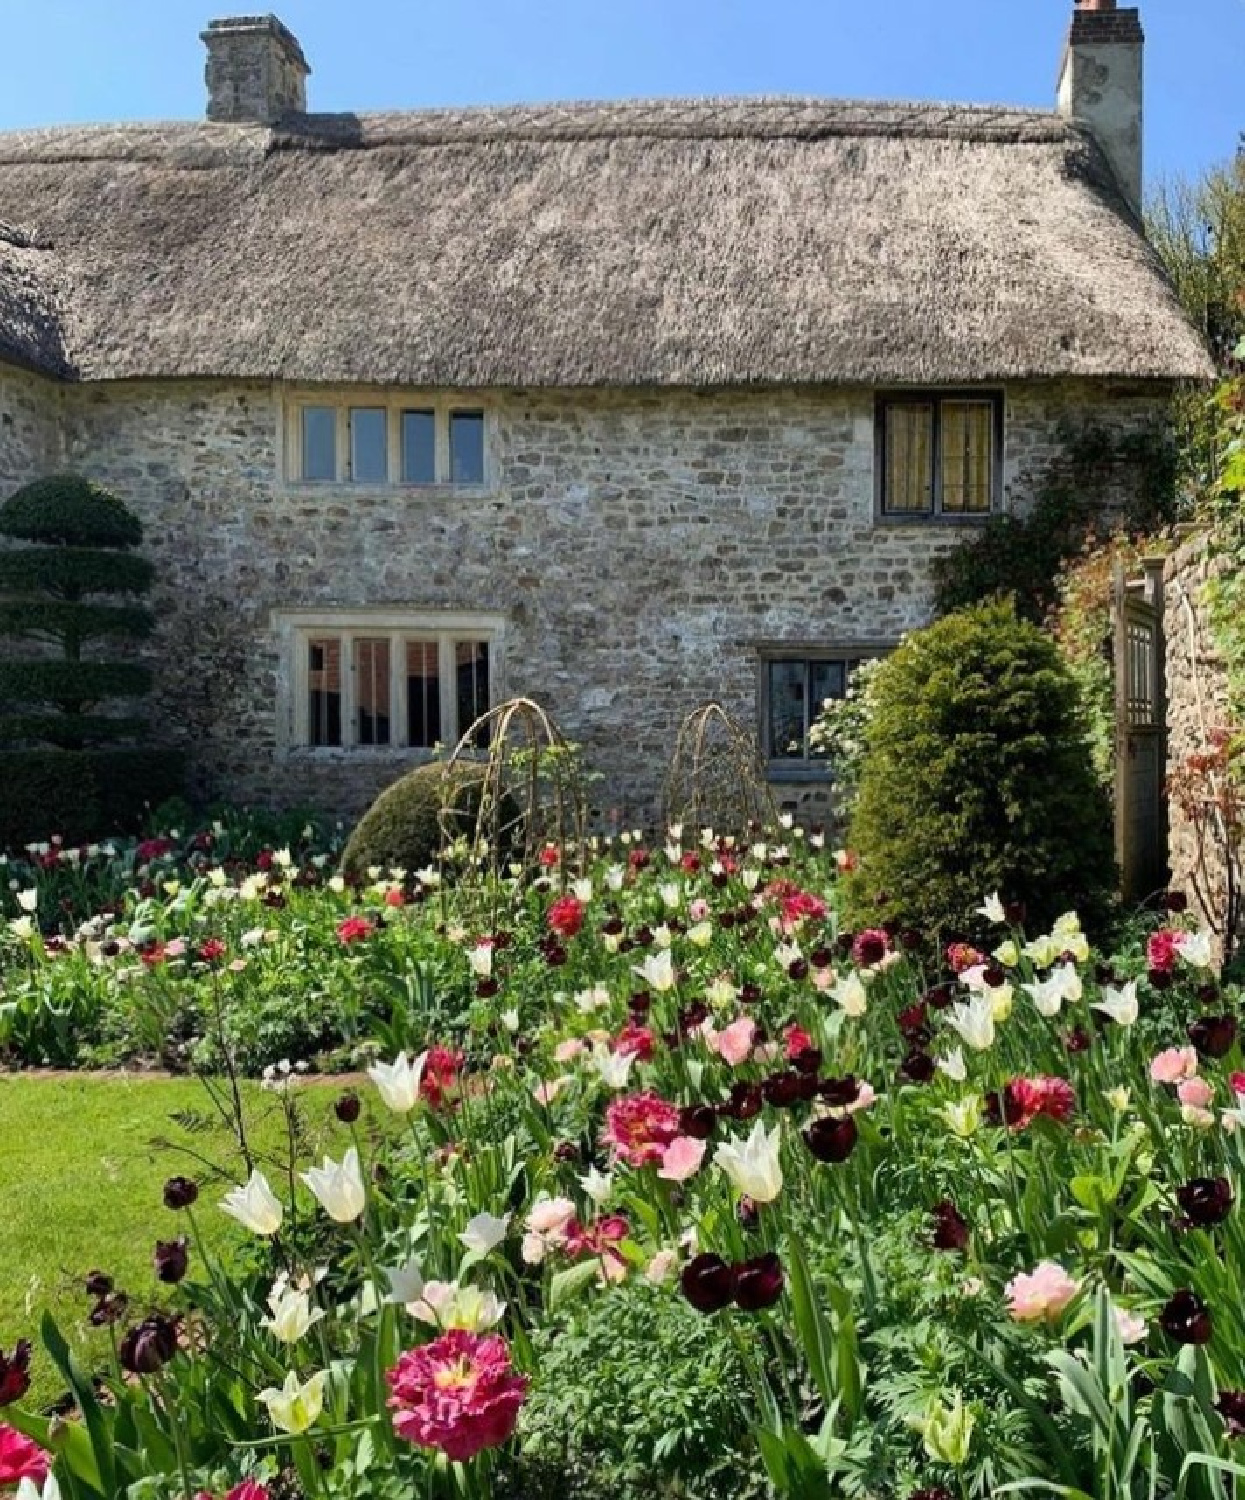 Charming ancient stone cottage with tulip garden - @nationalgardenscheme. #tulipgarden #englishcountrycottage #englishcottage #stonecottages